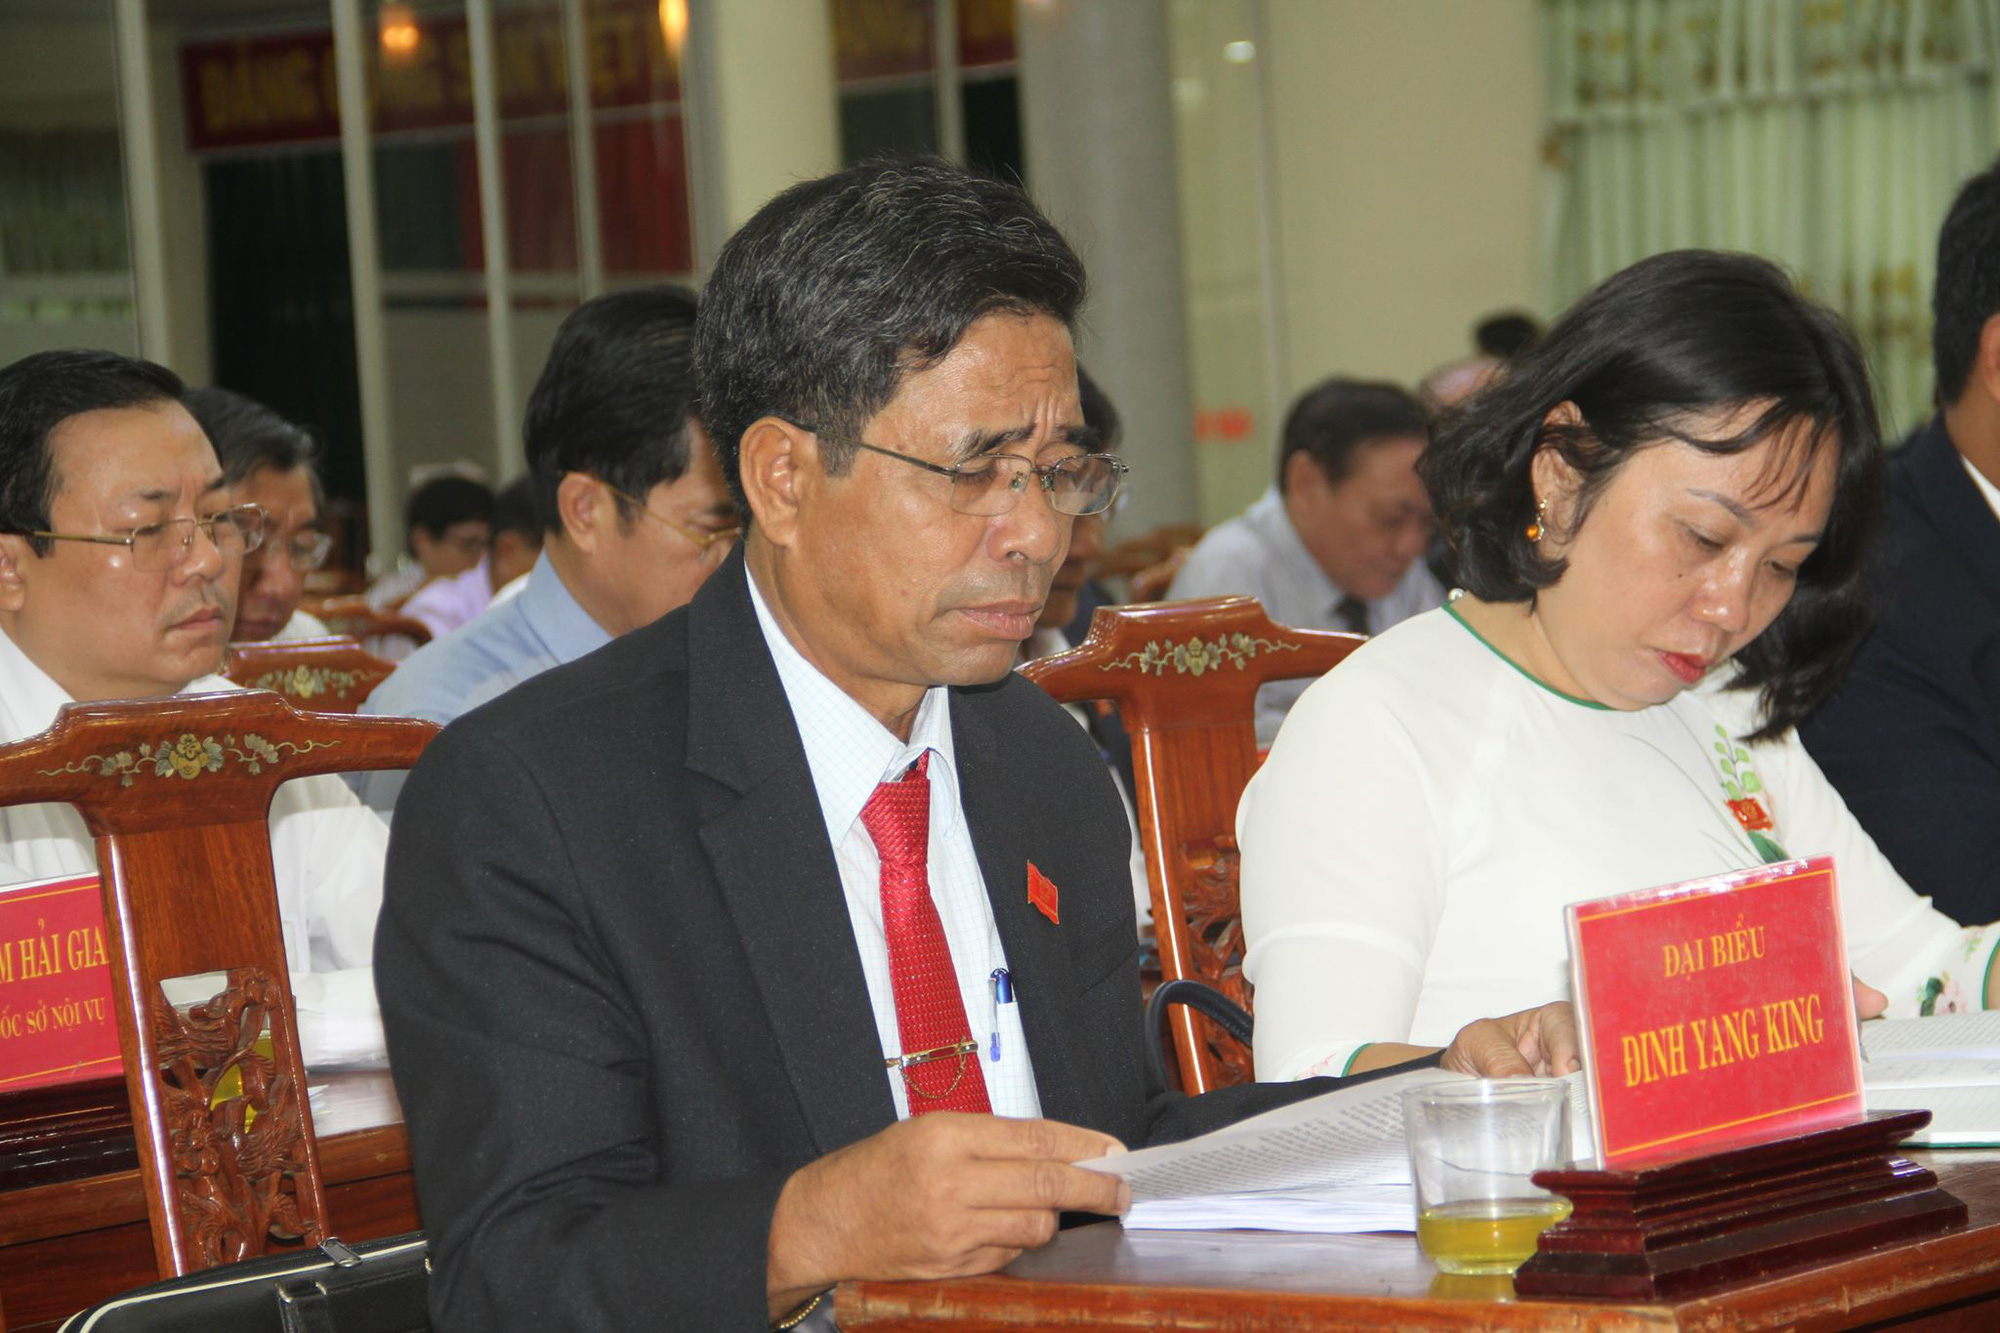 Bình Định họp Hội đồng Nhân dân… nhưng không tổ chức chất vấn trực tiếp lãnh đạo - Ảnh 3.